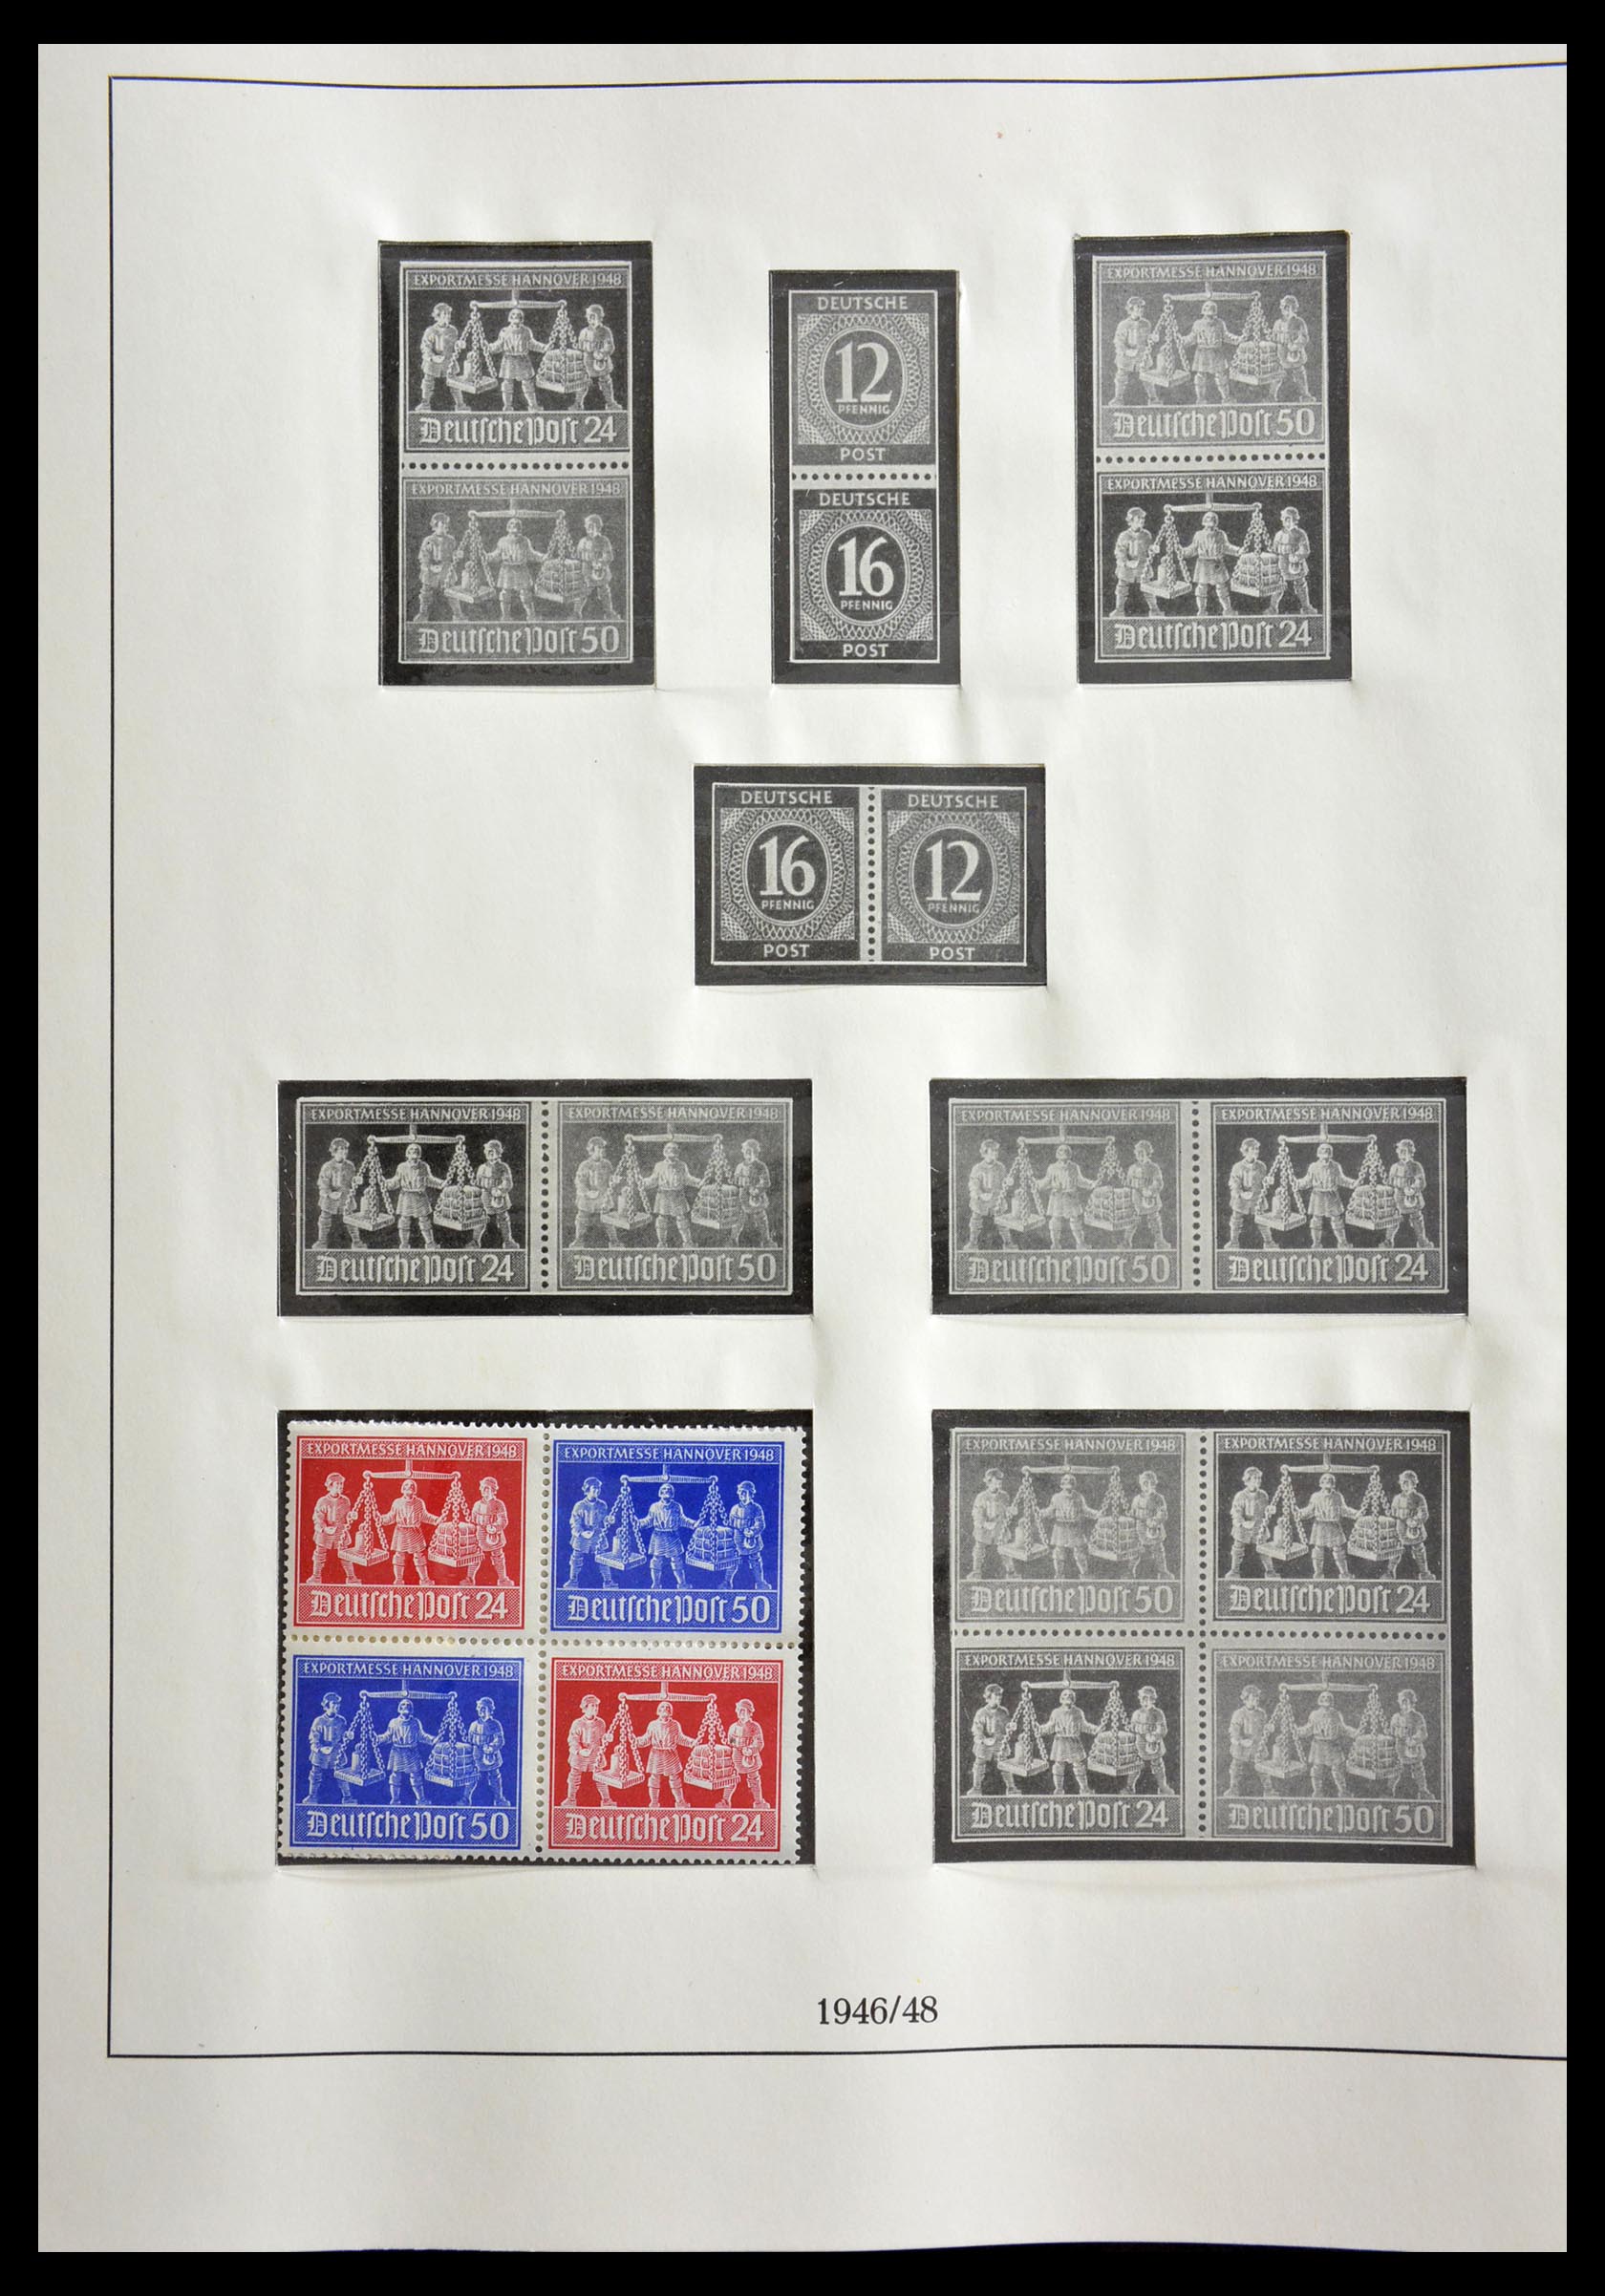 29259 005 - 29259 Bundespost en Zones 1945-1970.